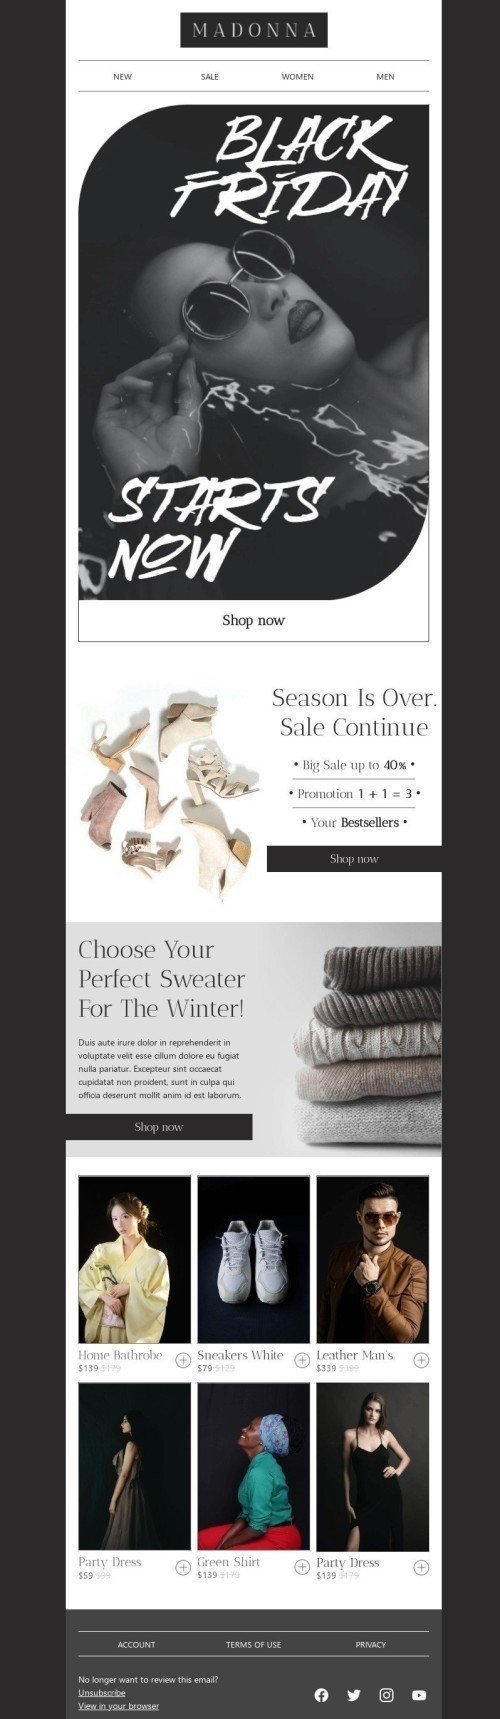 Modelo de E-mail de «Escolha o seu suéter perfeito» de Black Friday para a indústria de Moda Visualização de dispositivo móvel